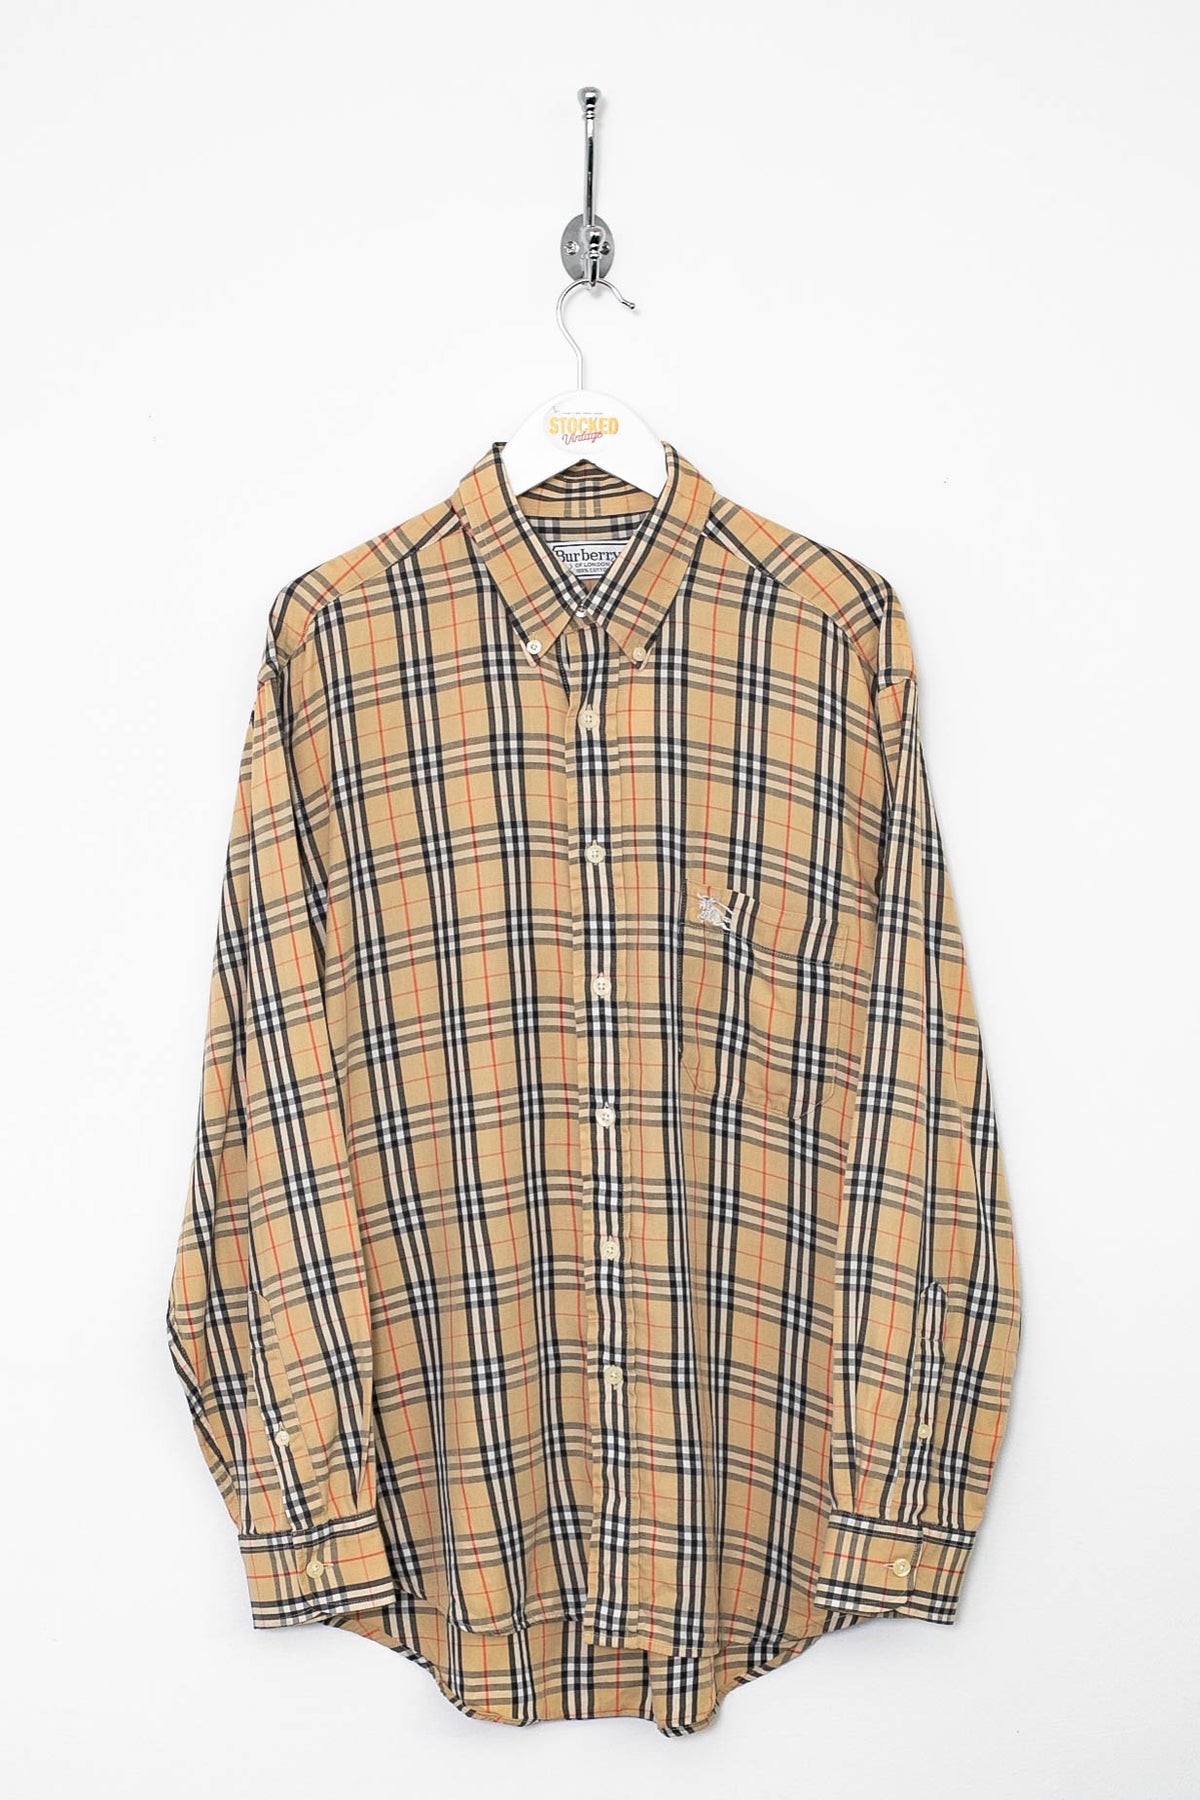 90s Burberry Nova Check Shirt (L)